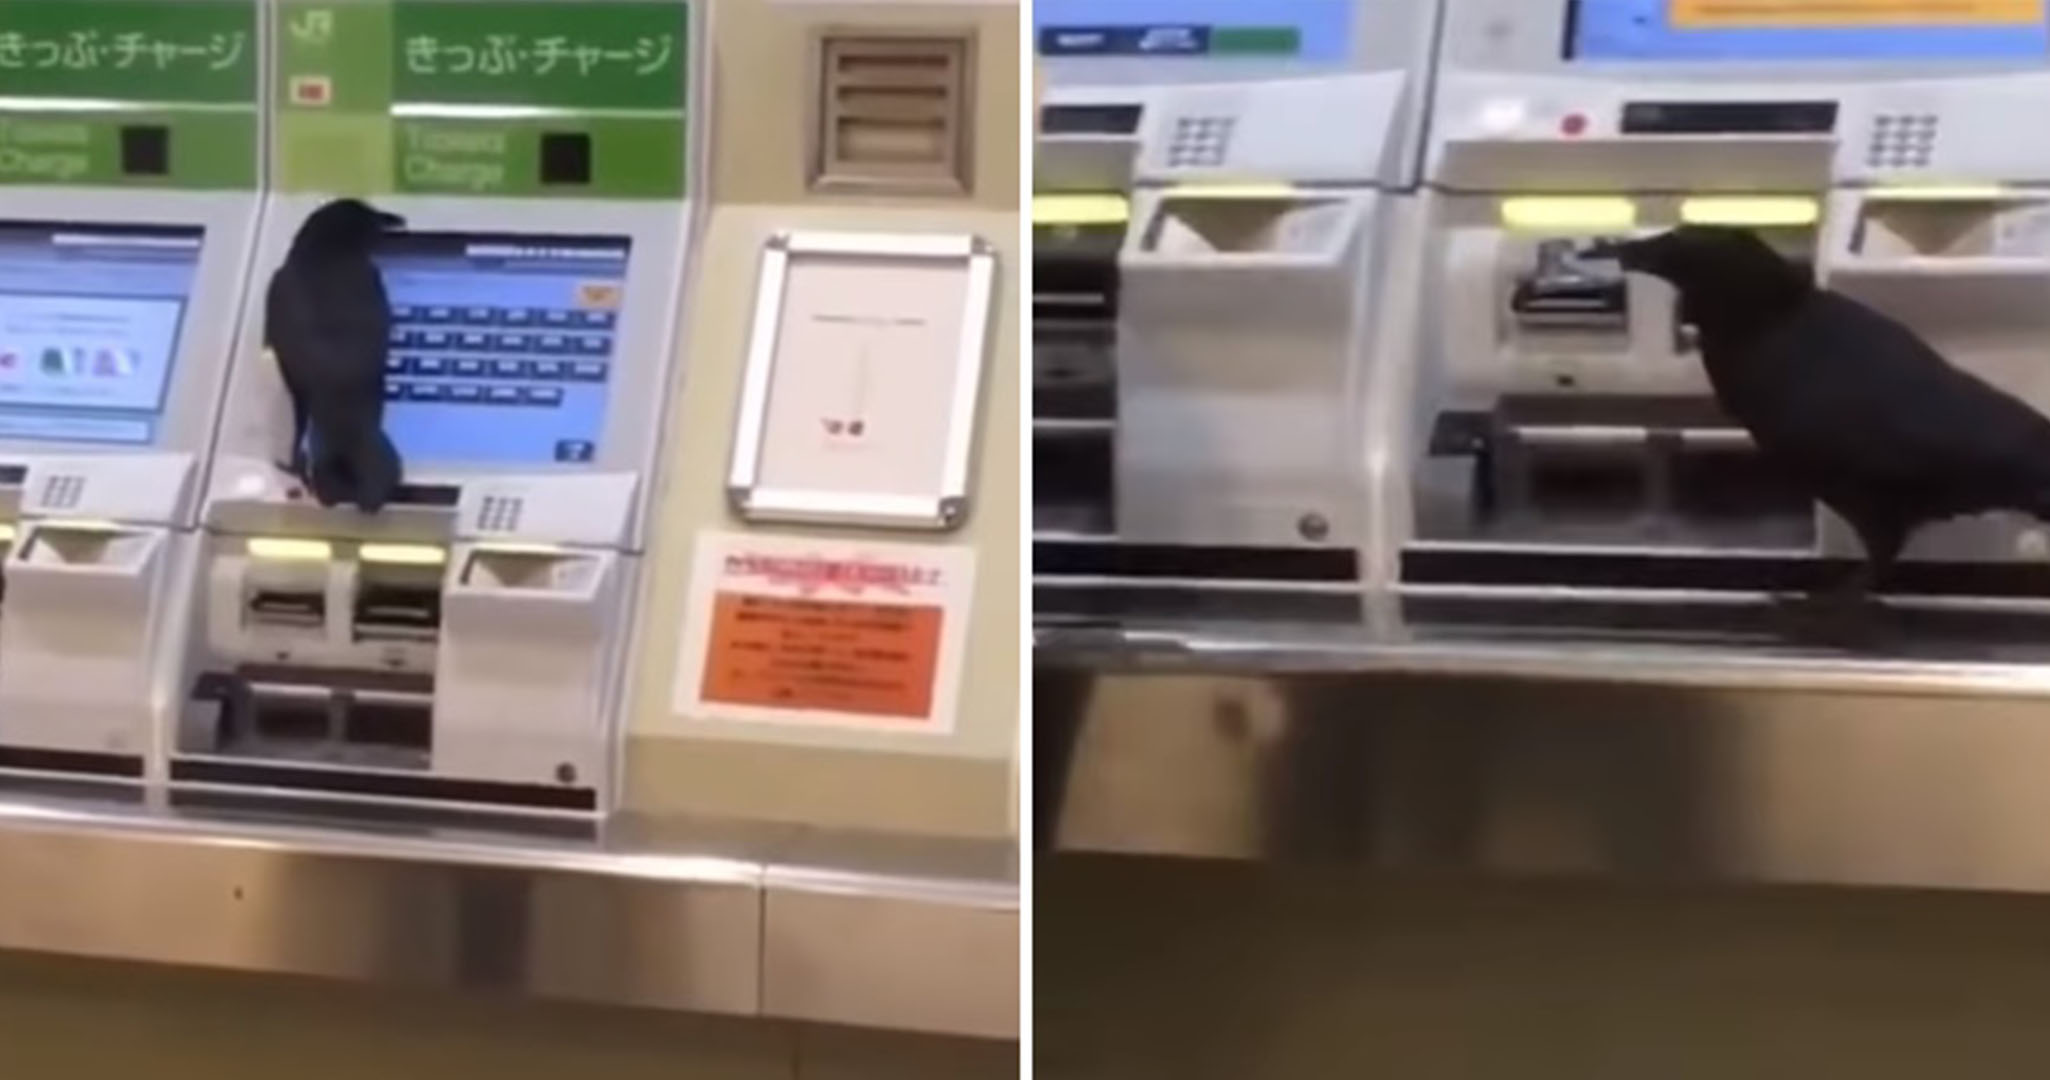 ฉลาดเกินไปแล้ว!! ชาวญี่ปุ่นแชร์คลิปอีกาขโมยบัตรเครดิตมนุษย์เพื่อซื้อตั๋วรถไฟ!?